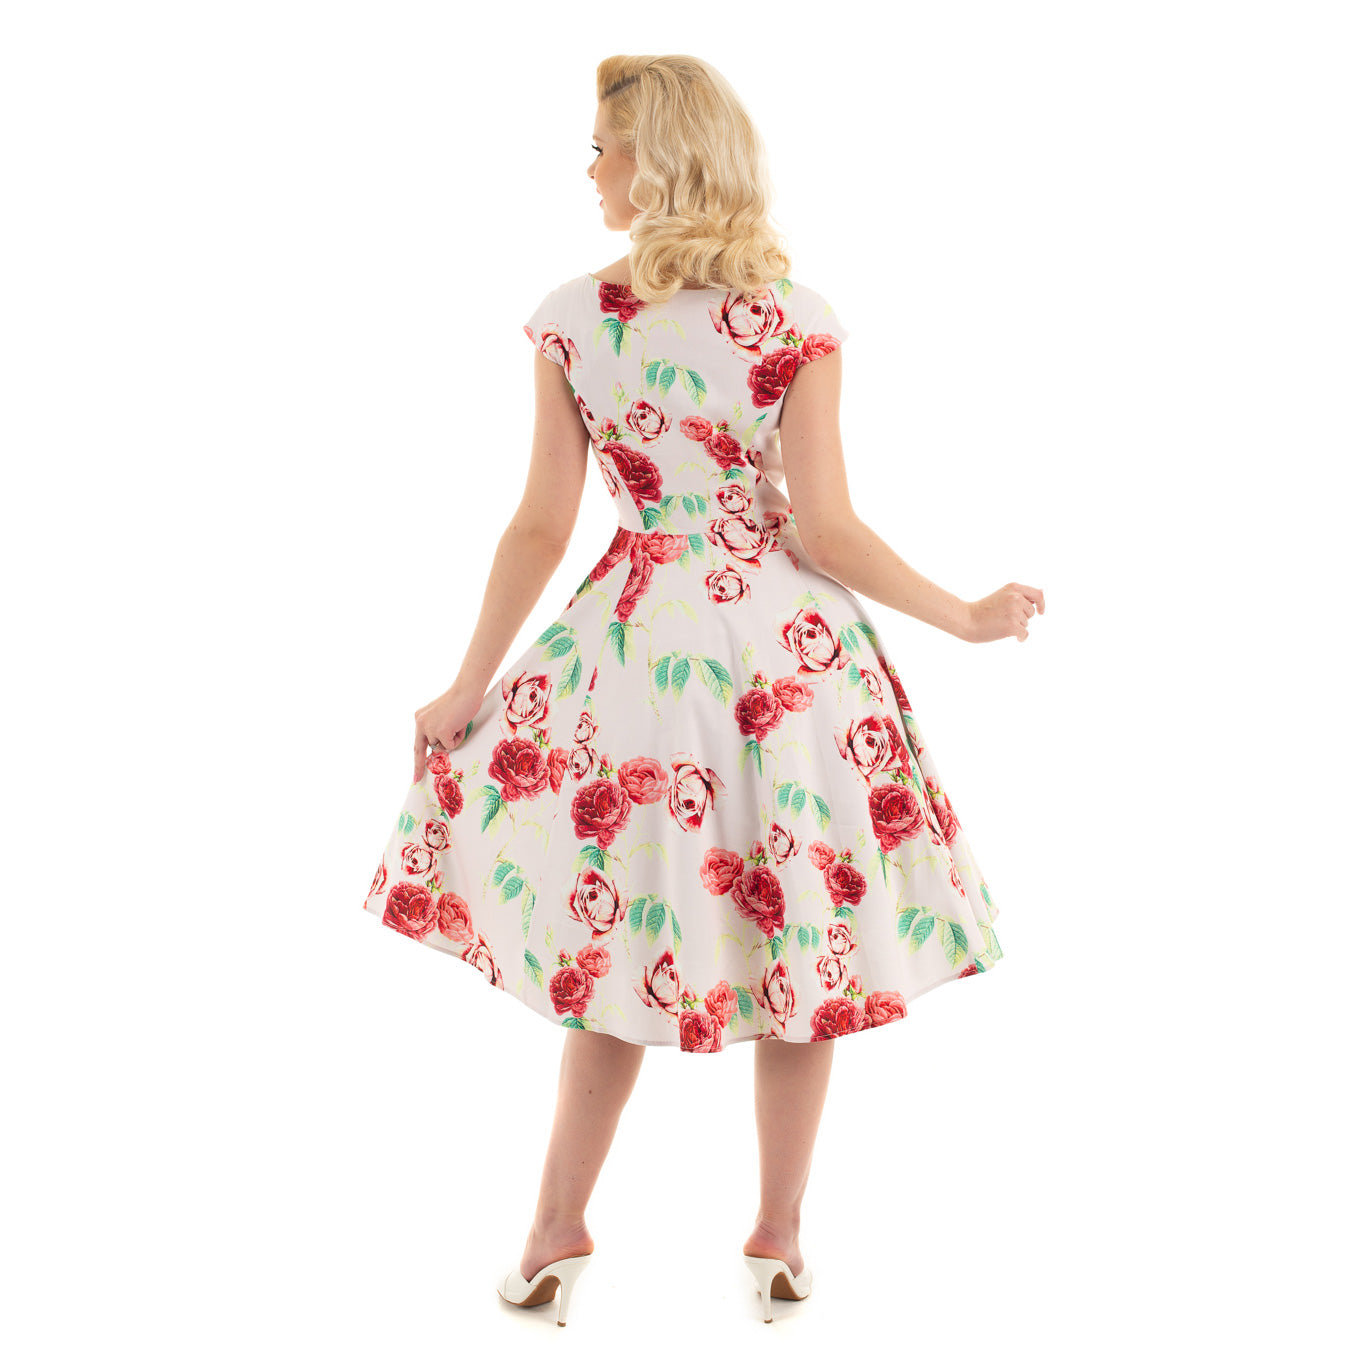 Off White Pink Vintage Floral 50s Summer Swing Dress